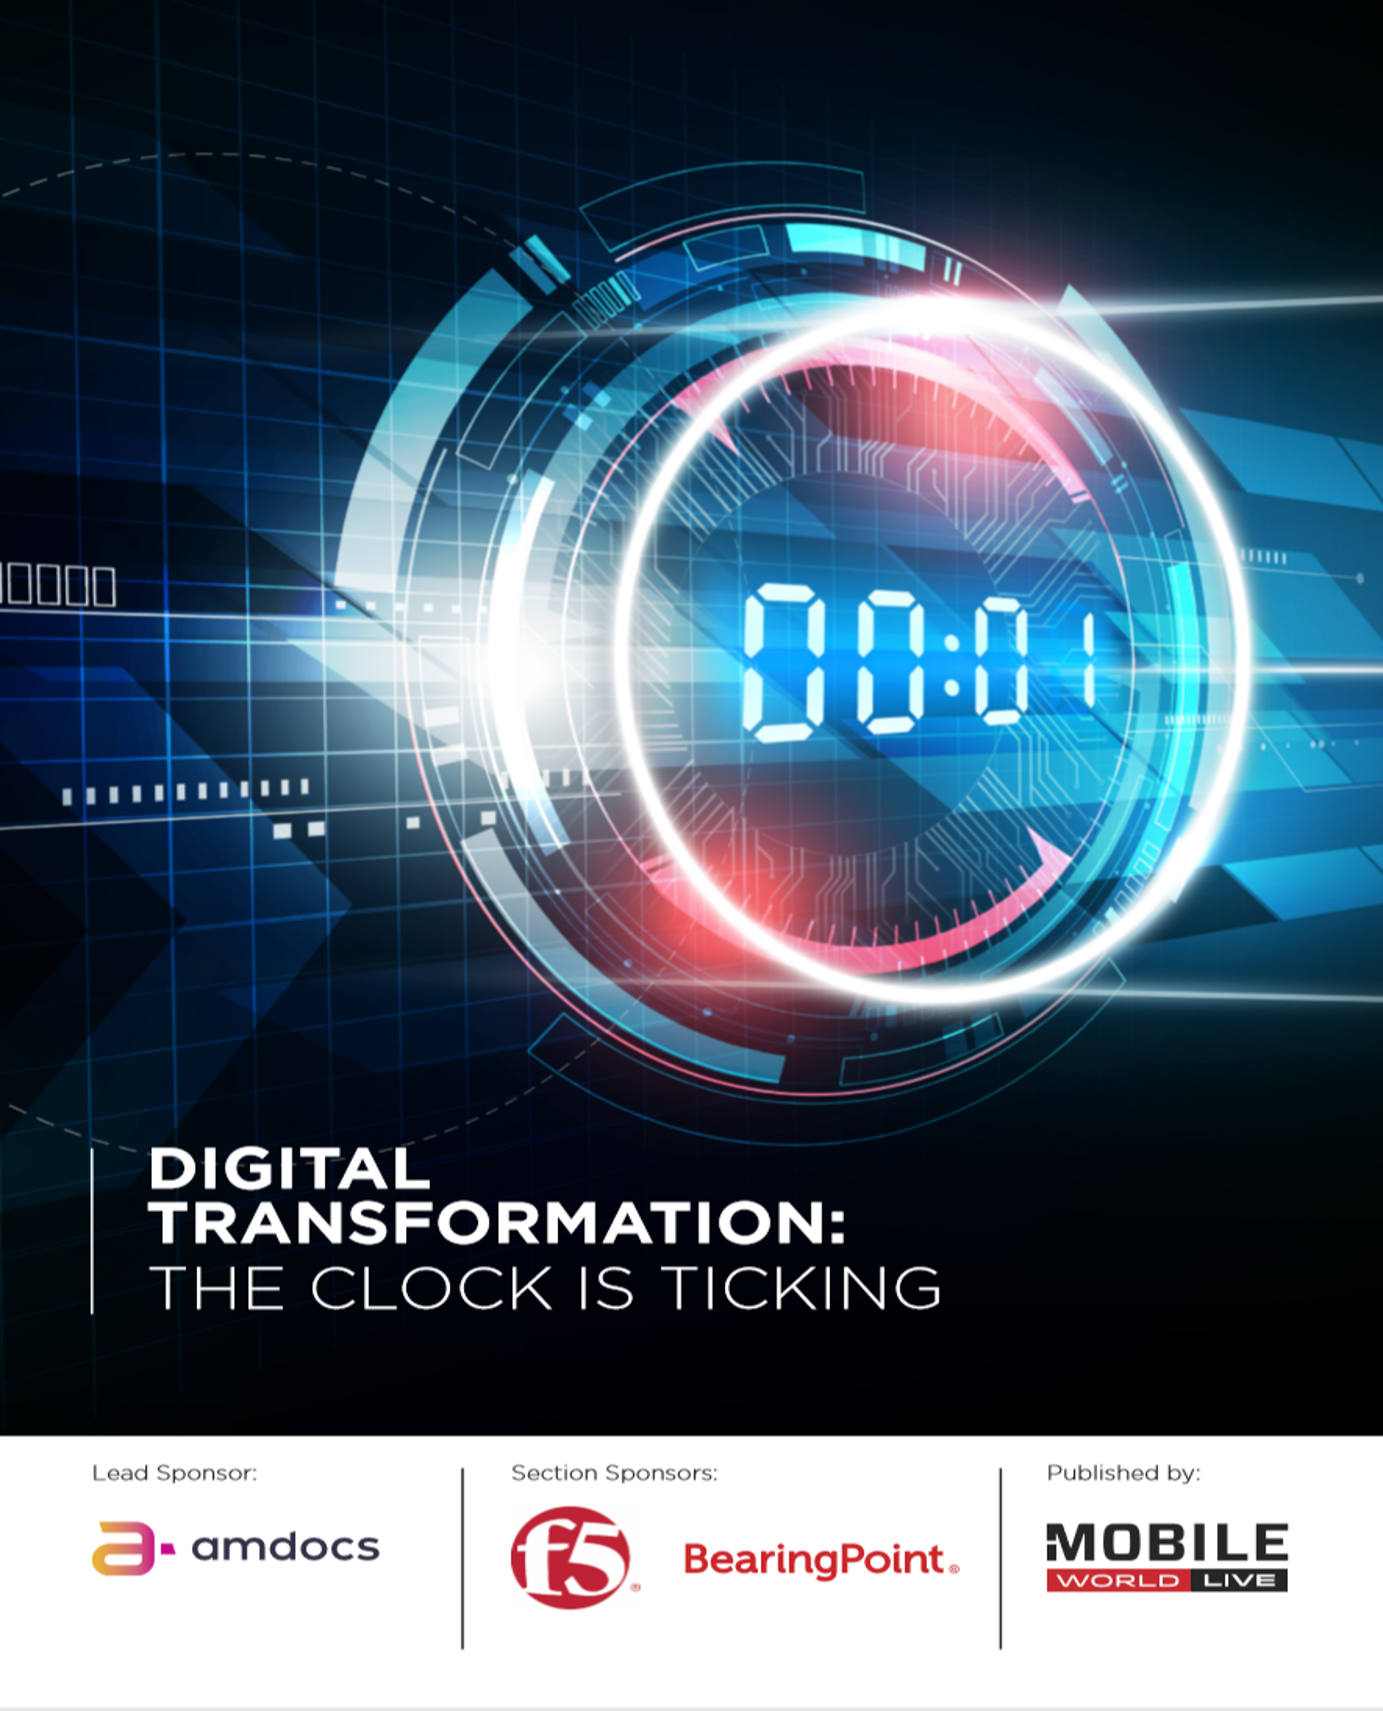 Digital Transformation Report